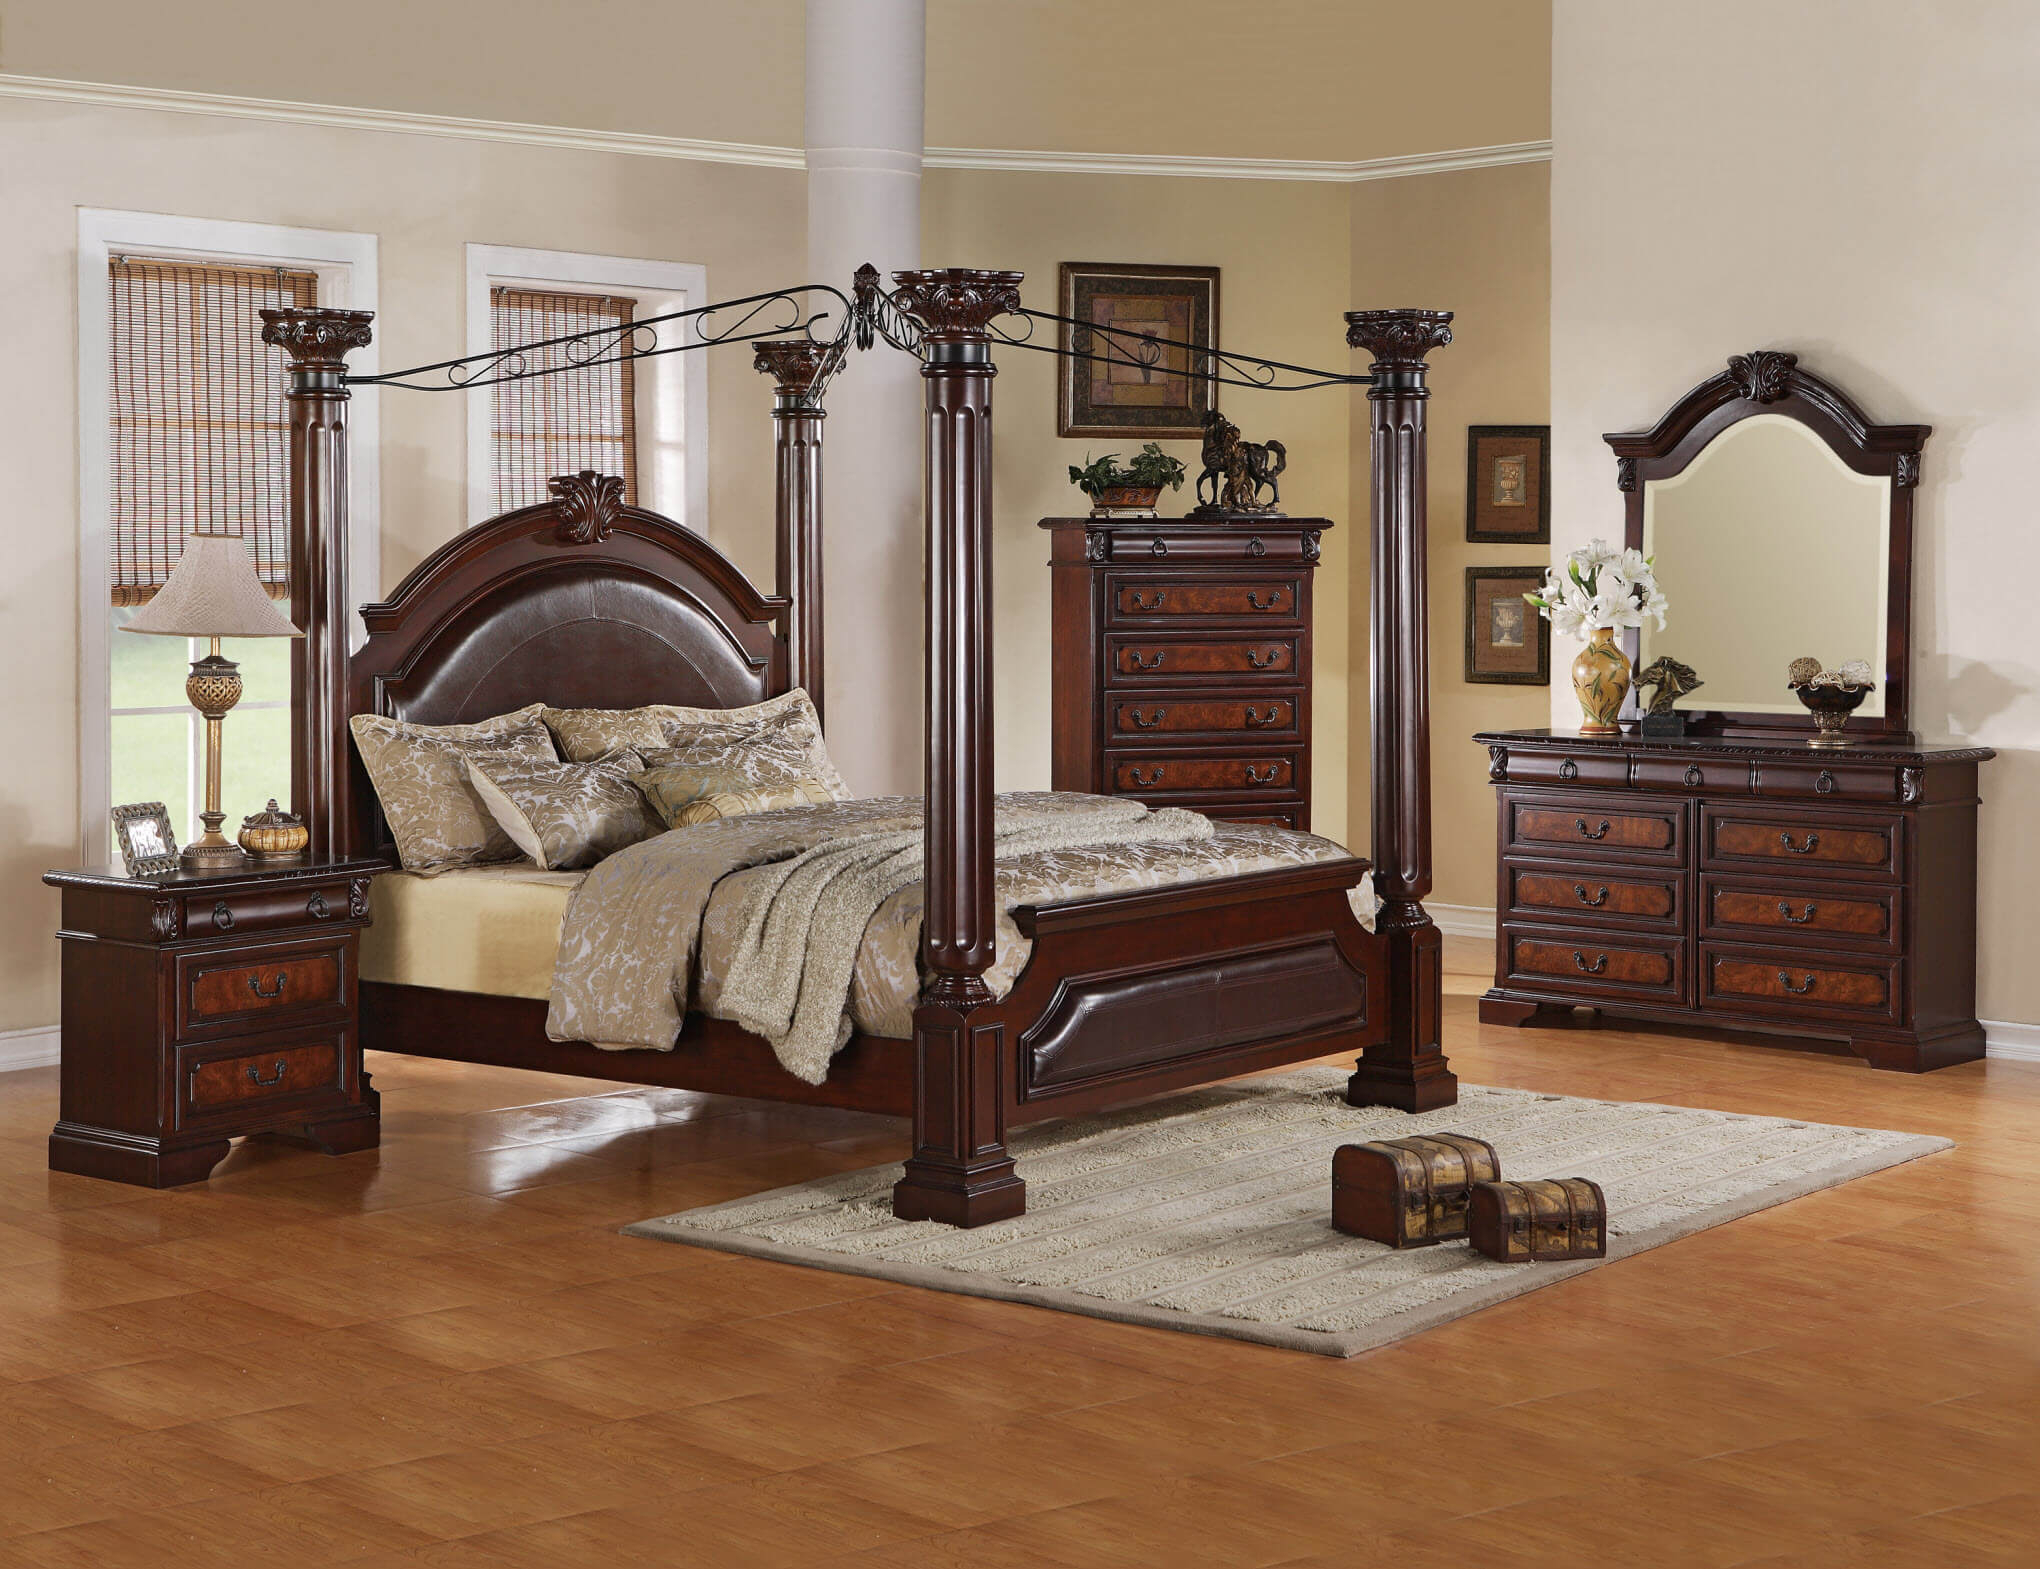 renaissance bedroom furniture for sale